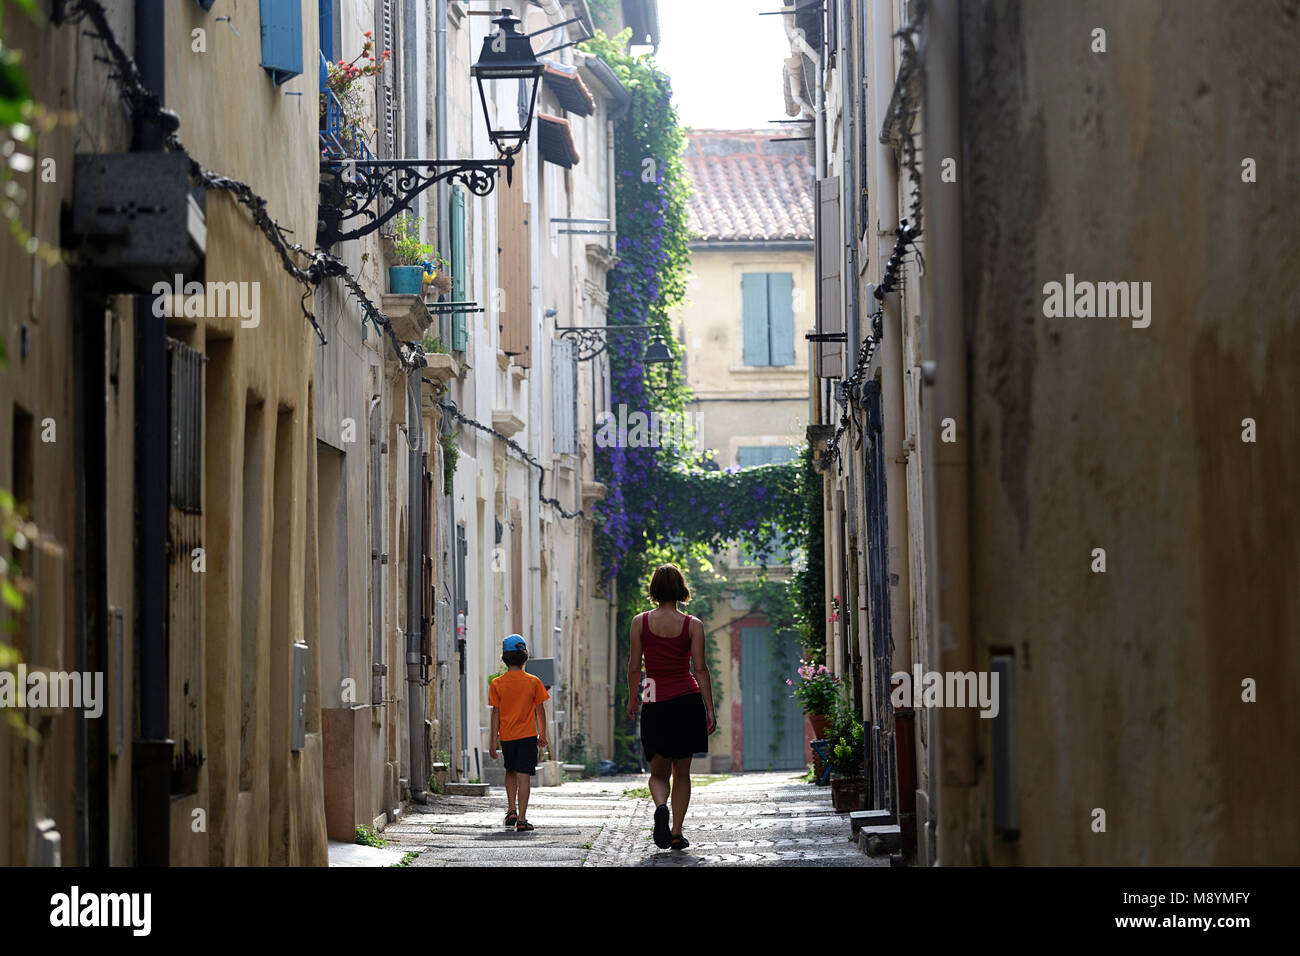 La mère et le fils marchant sur la rue pittoresque, scène de rue à Arles, Provence, France Banque D'Images